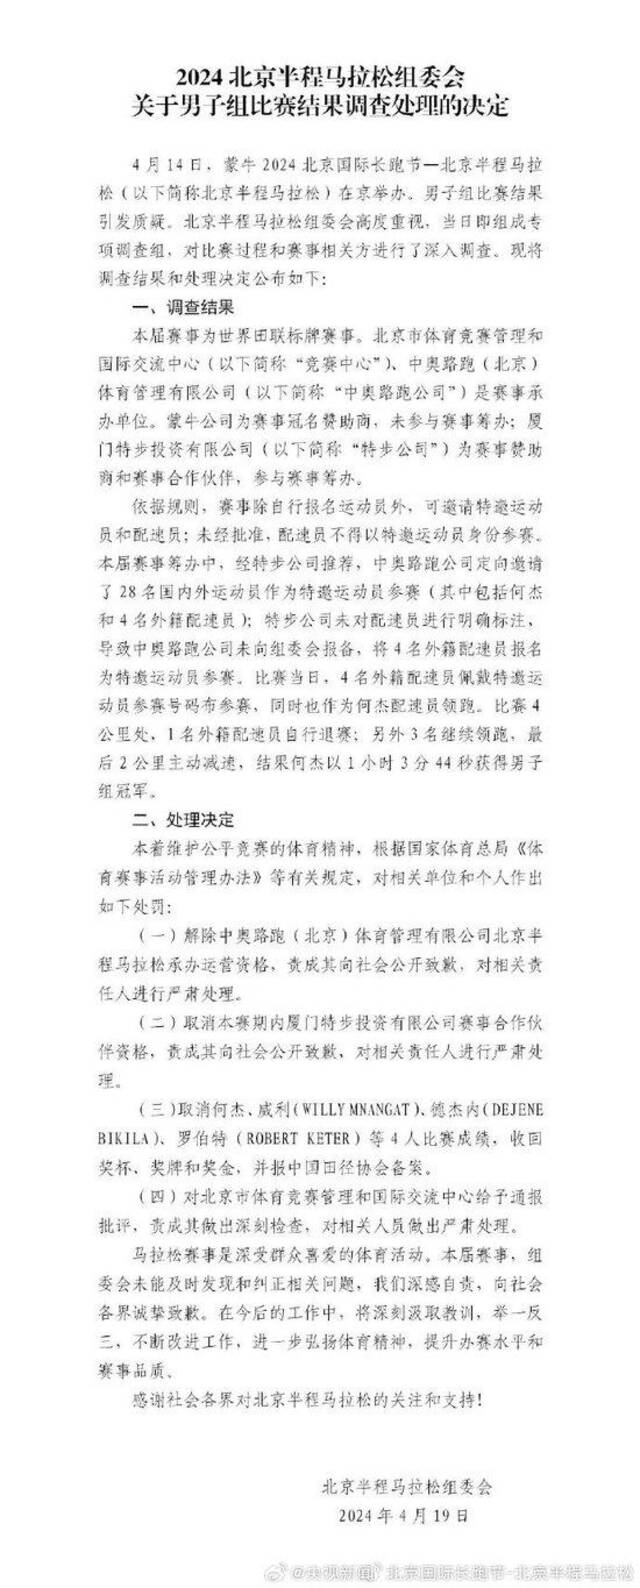 北京半马组委会公布男子组比赛调查处理结果：取消何杰等4人比赛成绩